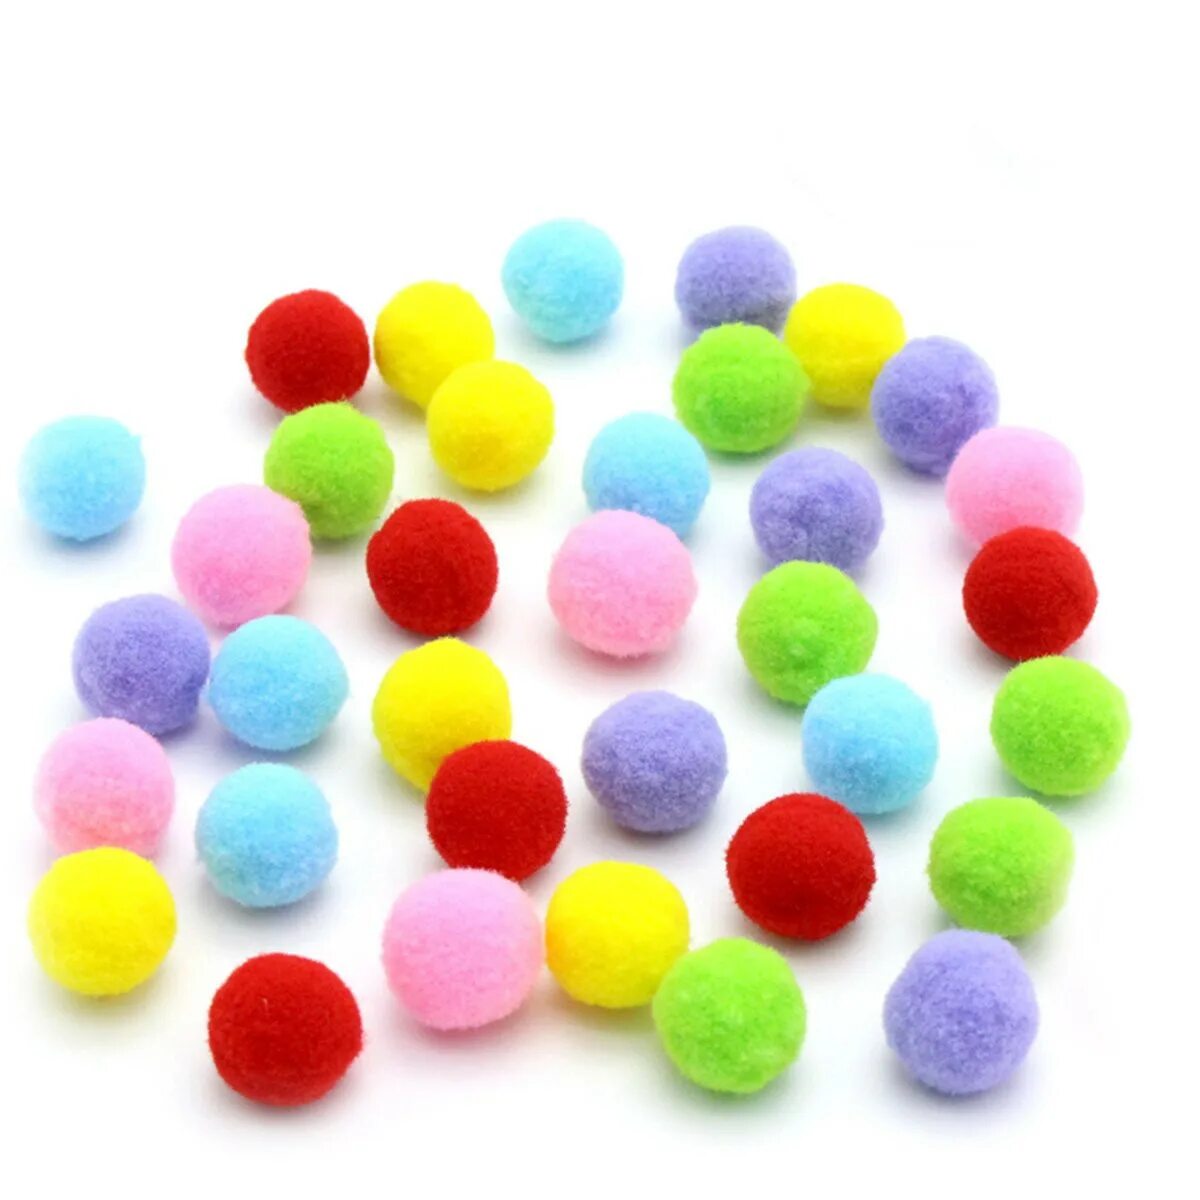 Помпоны микс 10мм, 41шт. Разноцветные мягкие шарики. Мягкие шарики для поделок. Цветные помпоны. Мягкие шарики купить